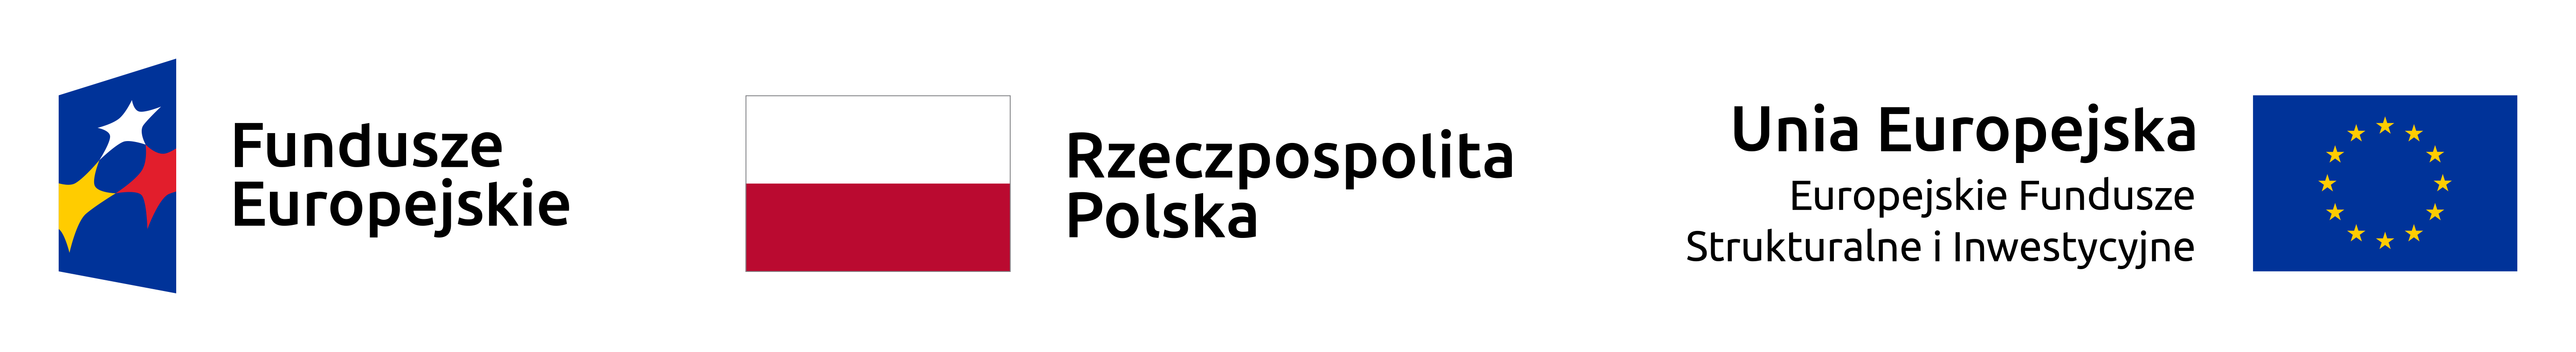 projekty unijne logo